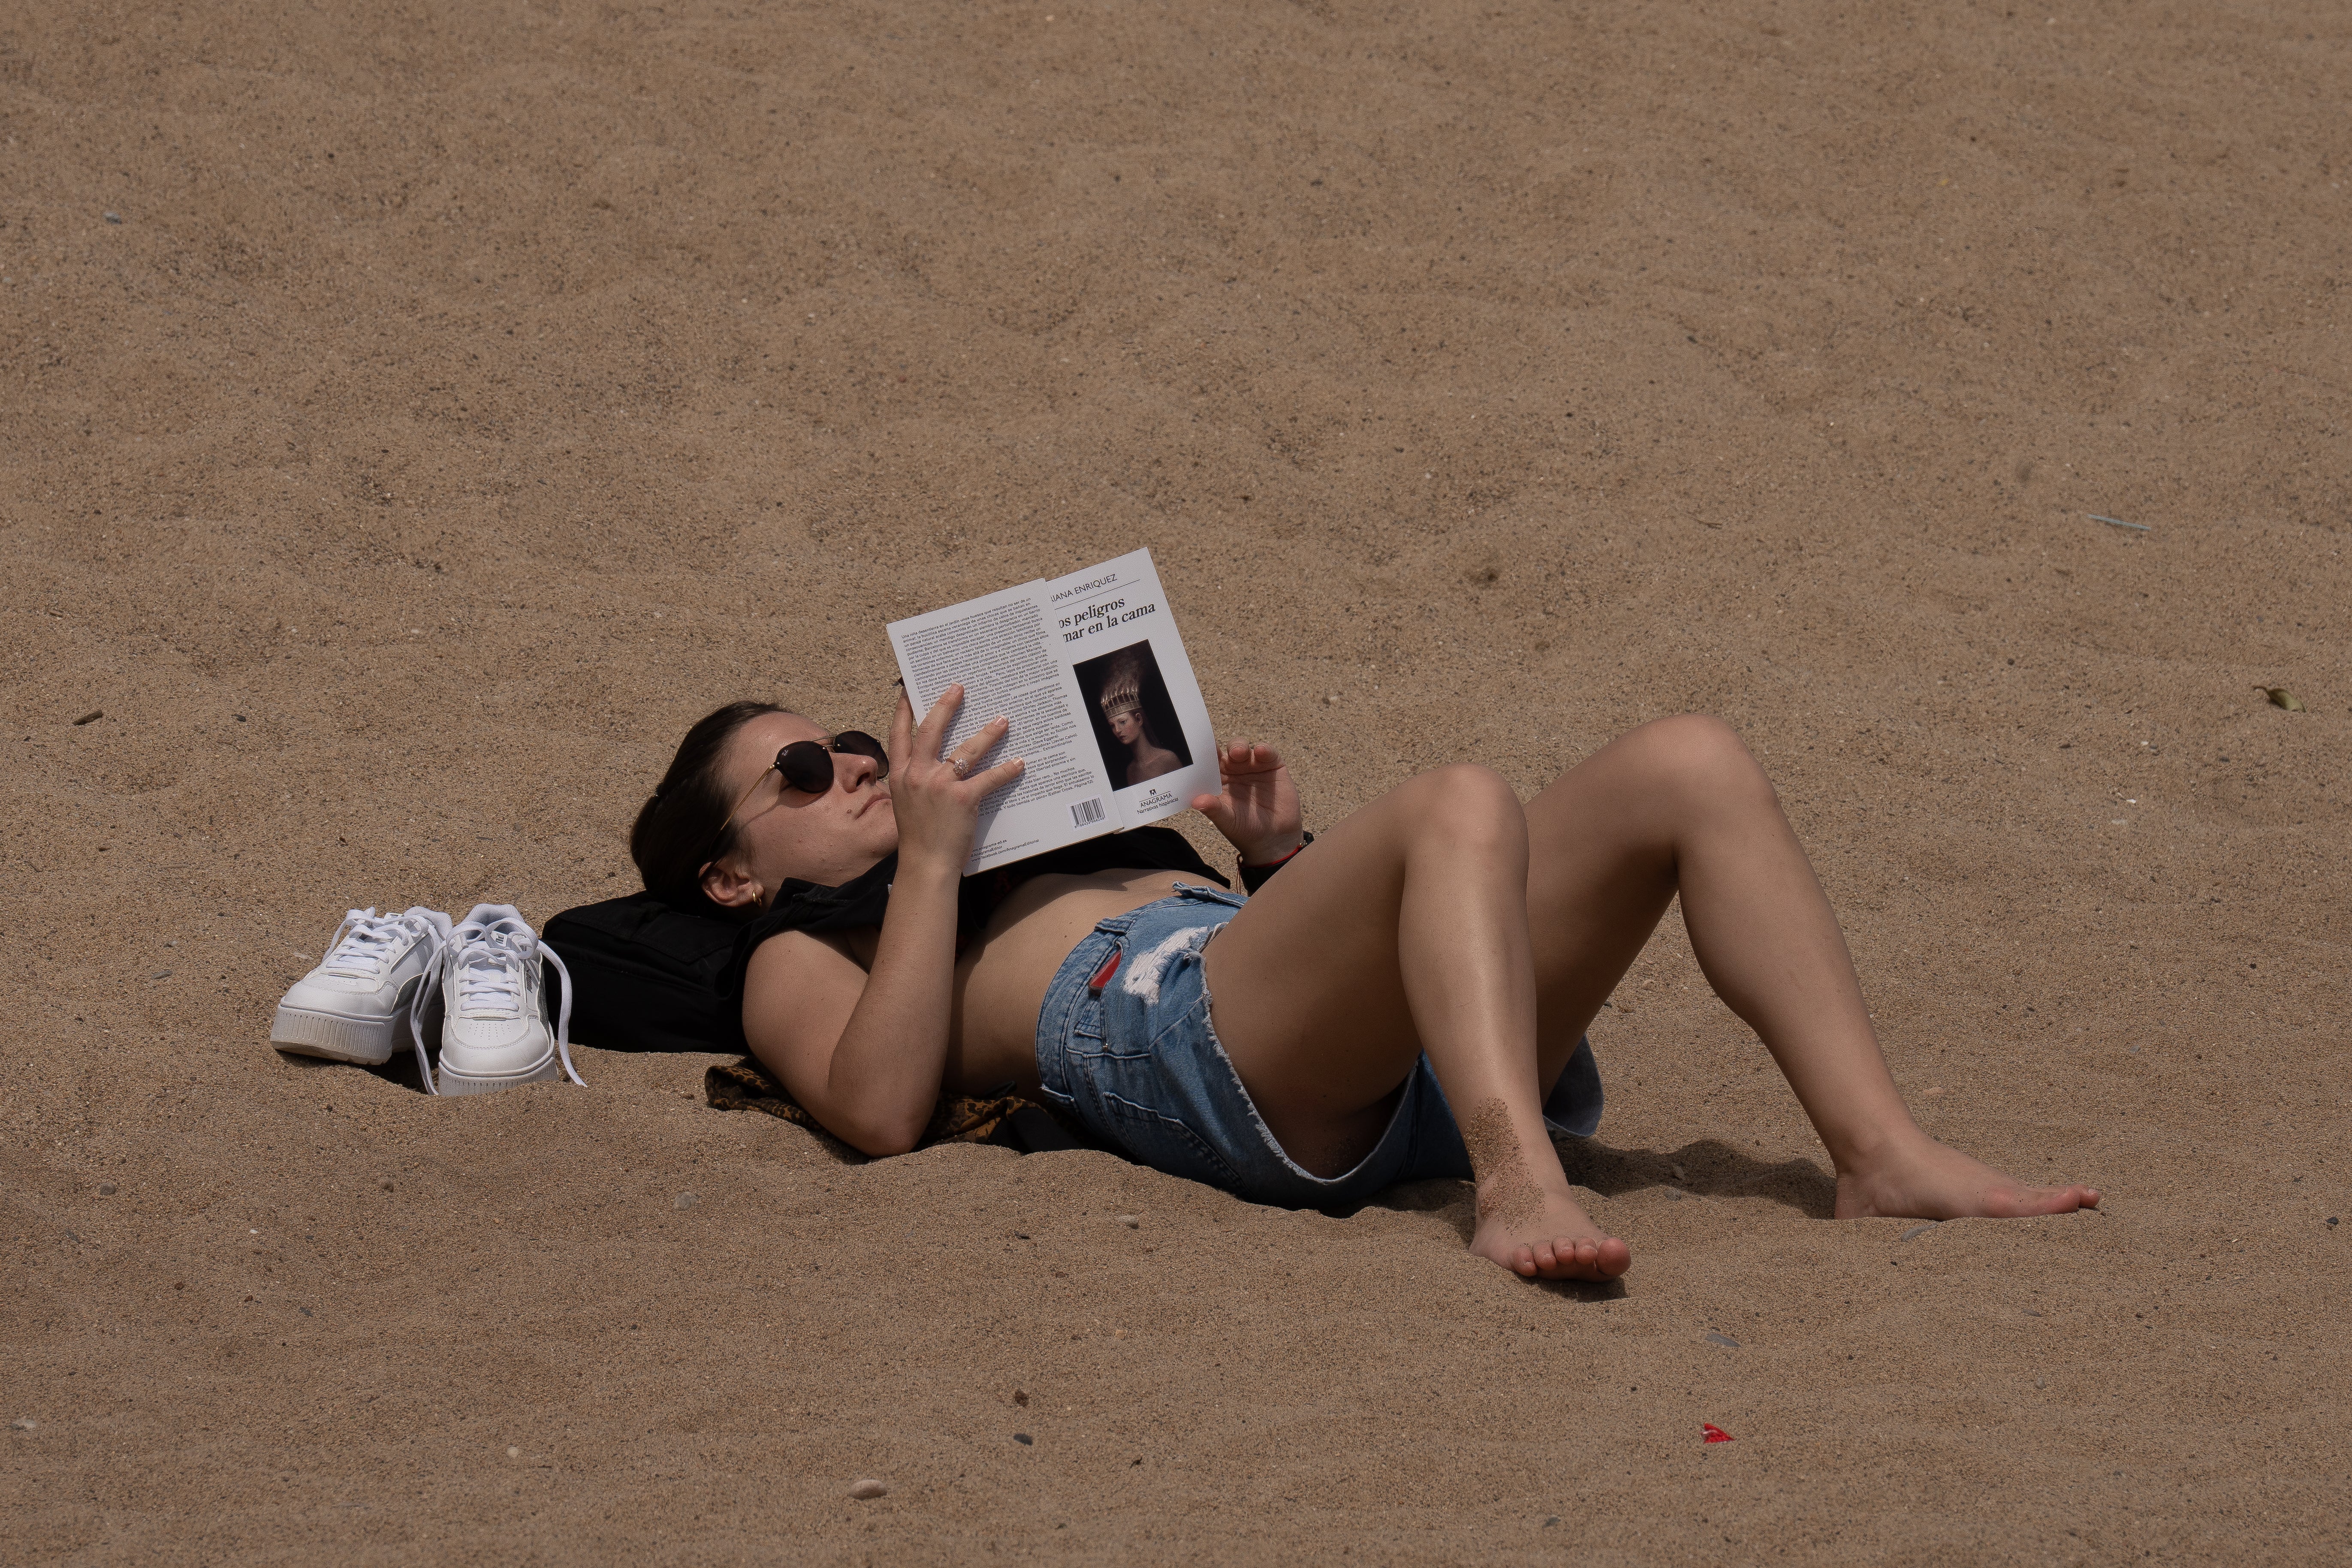 Se multiplican las webs que exhiben fotos de mujeres en topless en la playa hechas sin su consentimiento Foto